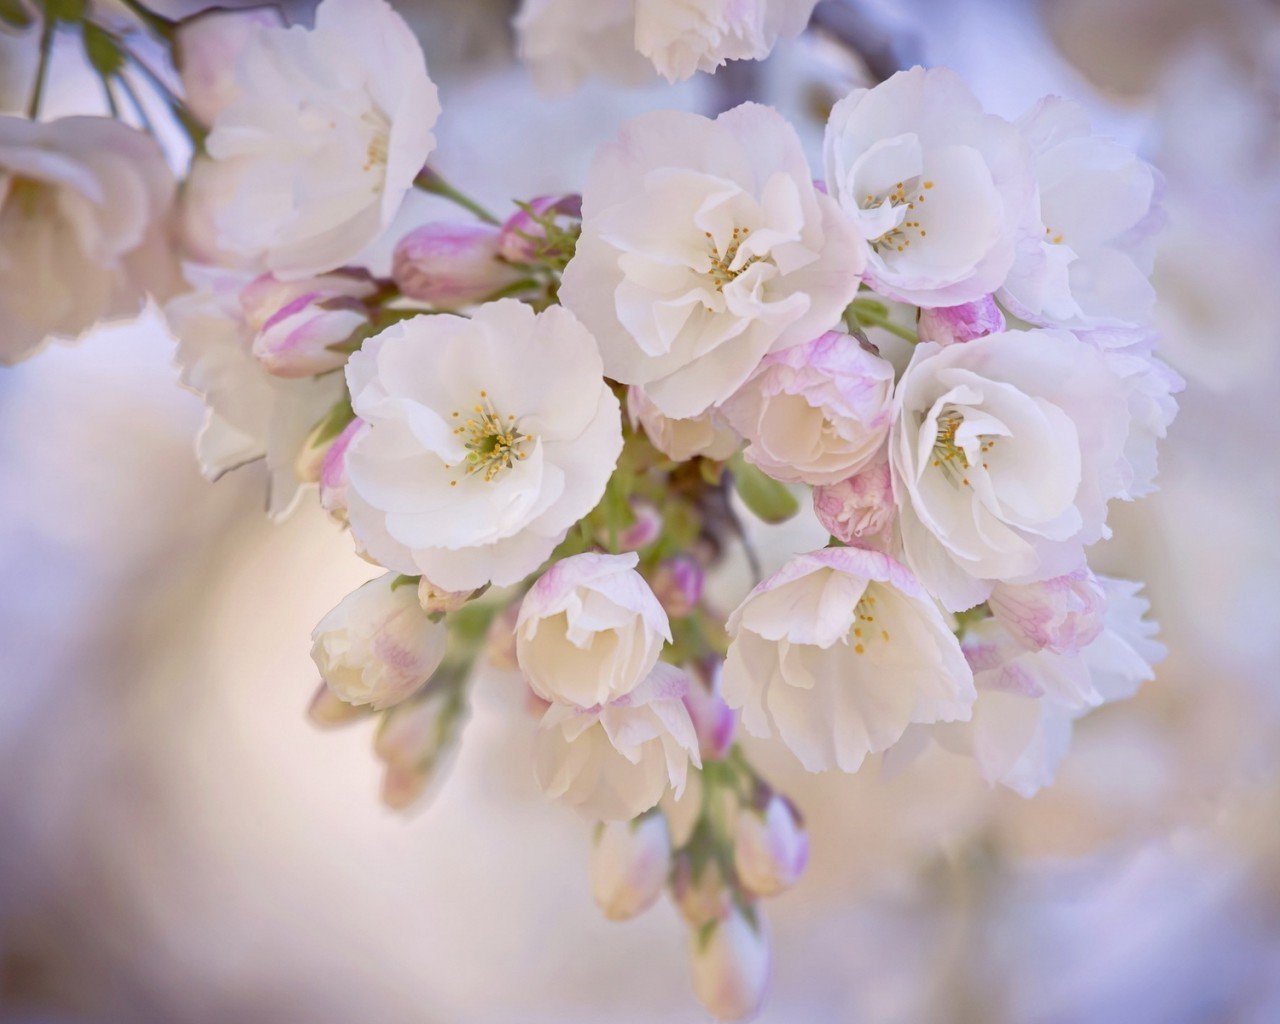 цветы цветок природа флора вишня филиал лист лепесток сад цветочные блюминг дерево дружище нежный лето рост яблоко яркий пасха цвет